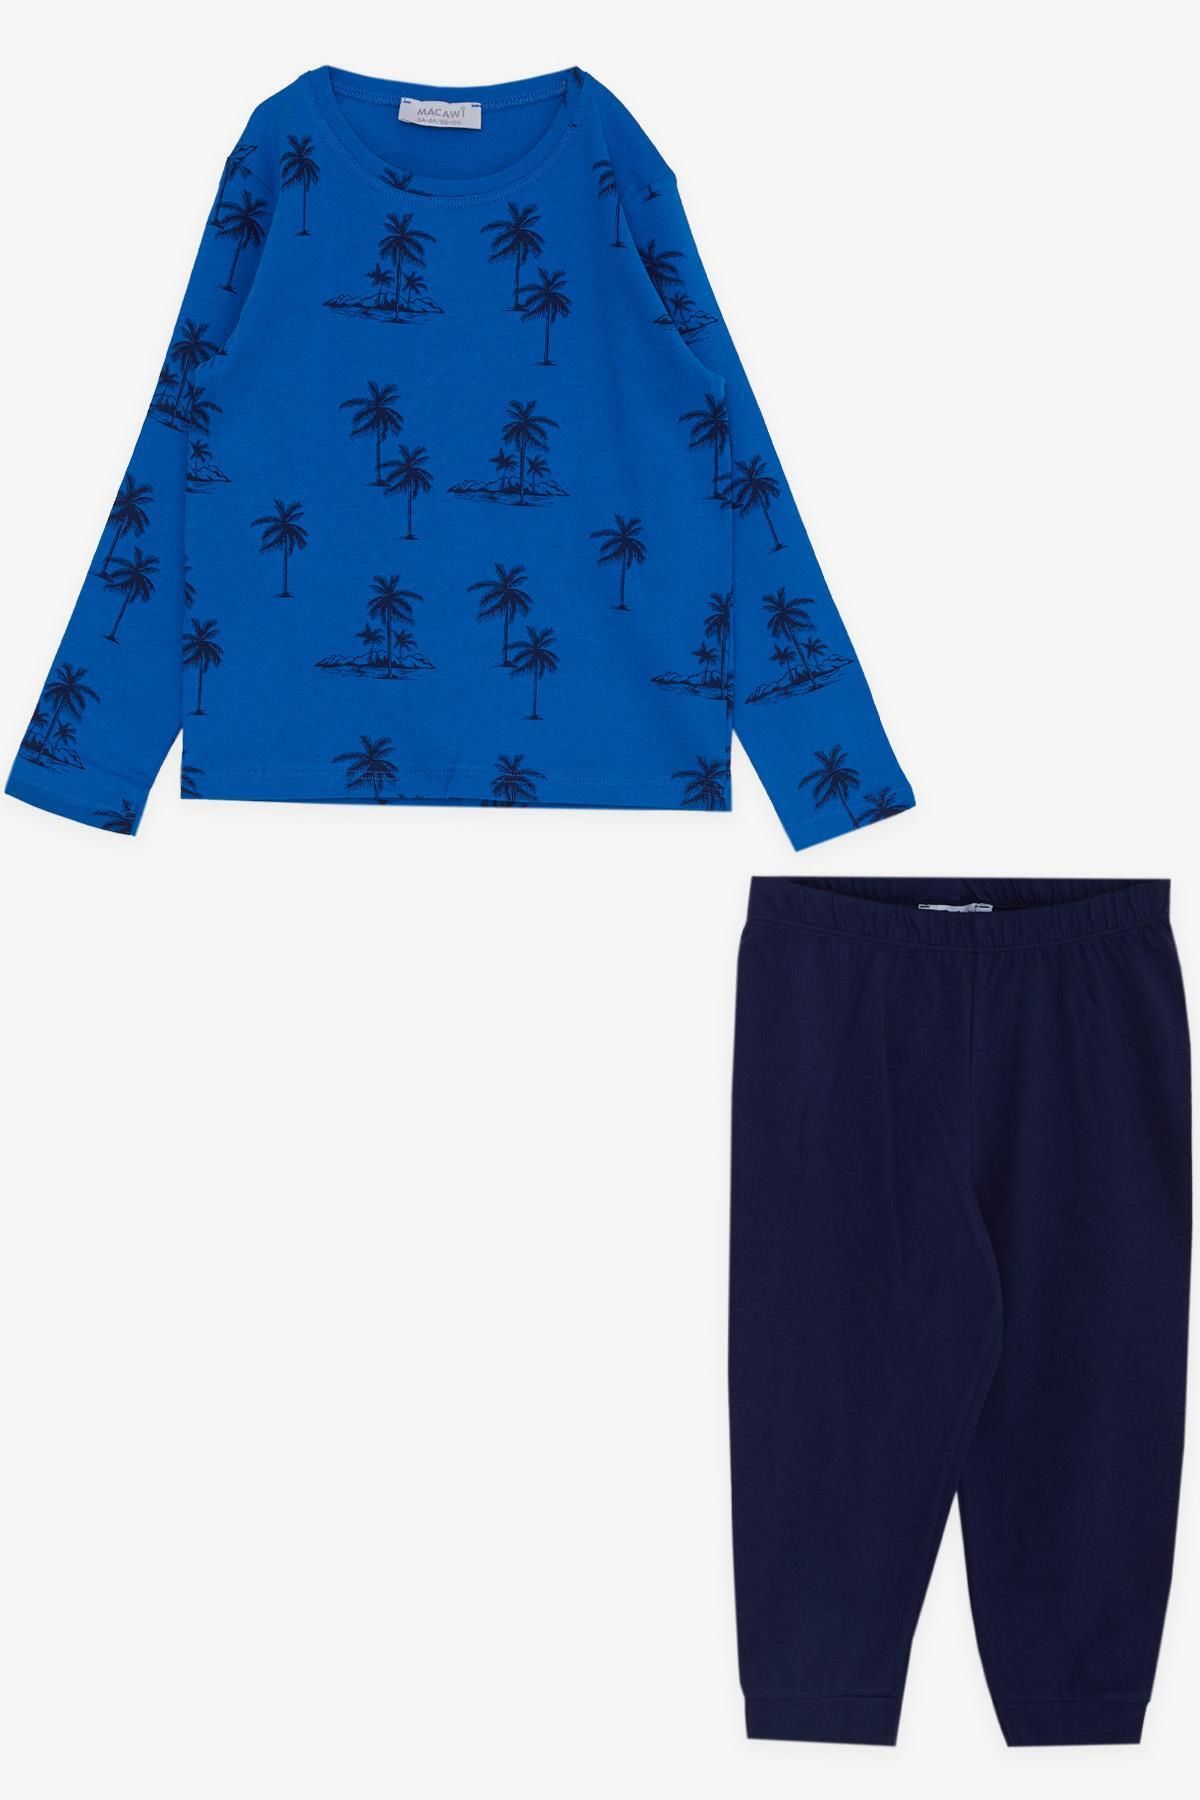 Macawi Breeze Erkek Çocuk Pijama Takımı Palmiye Desenli 3-7 Yaş, Saks Mavisi